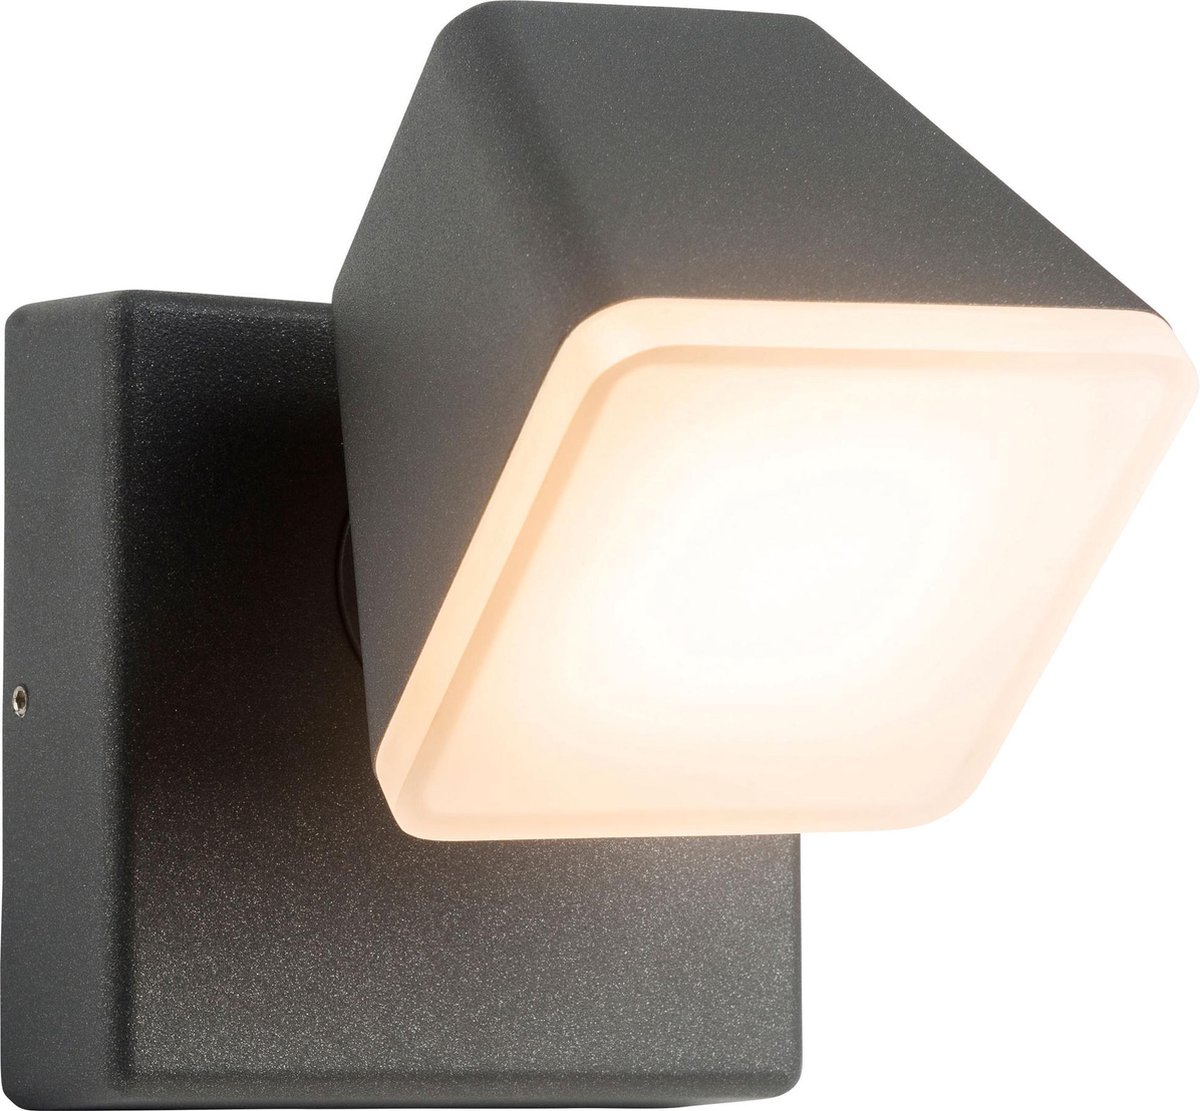 AEG lamp Isacco LED wandlamp antraciet | 1x 12,5W LED geïntegreerd, (1200lm, 3000K) | Schaal A ++ tot E | IP-beschermingsklasse: 54 - spatwaterdicht